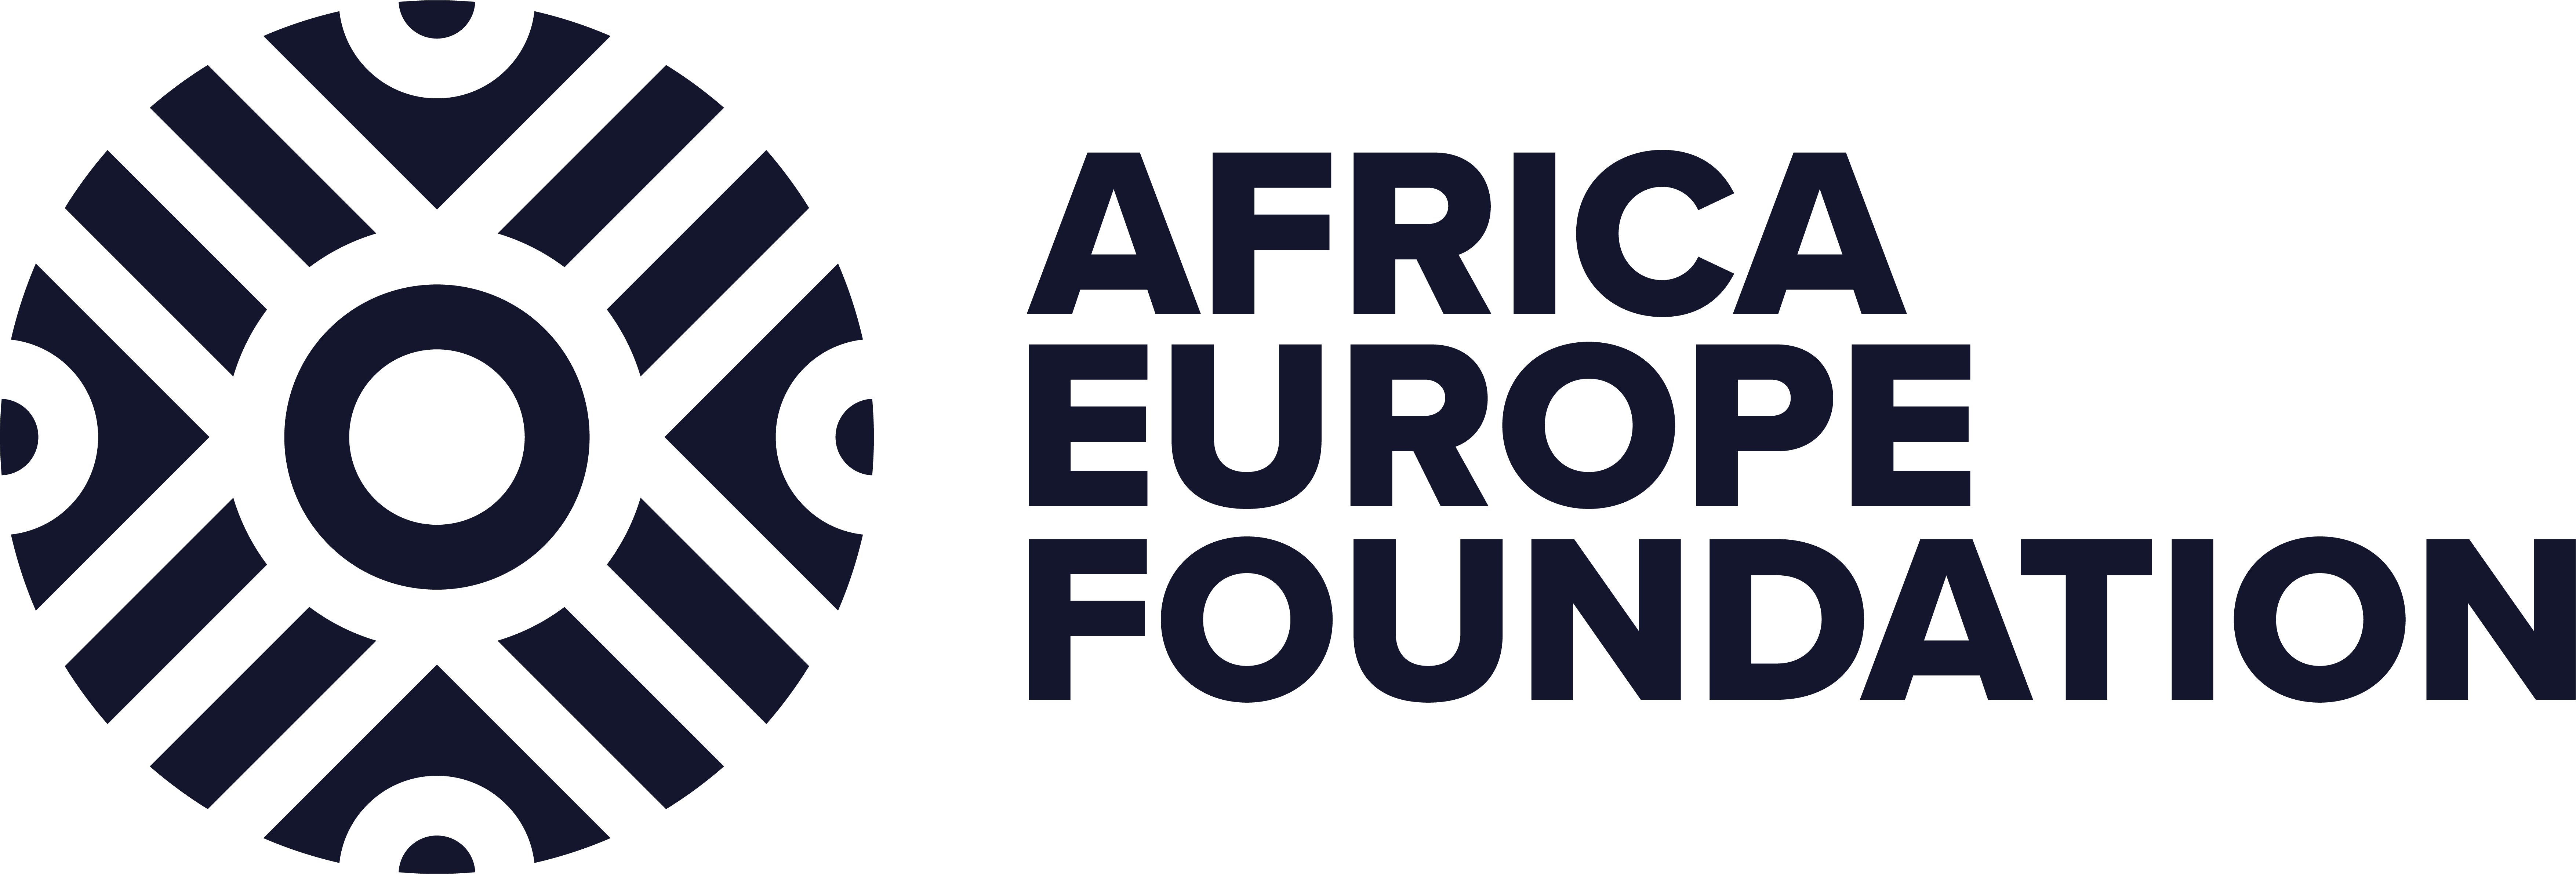 Africa-Europe Foundation logo